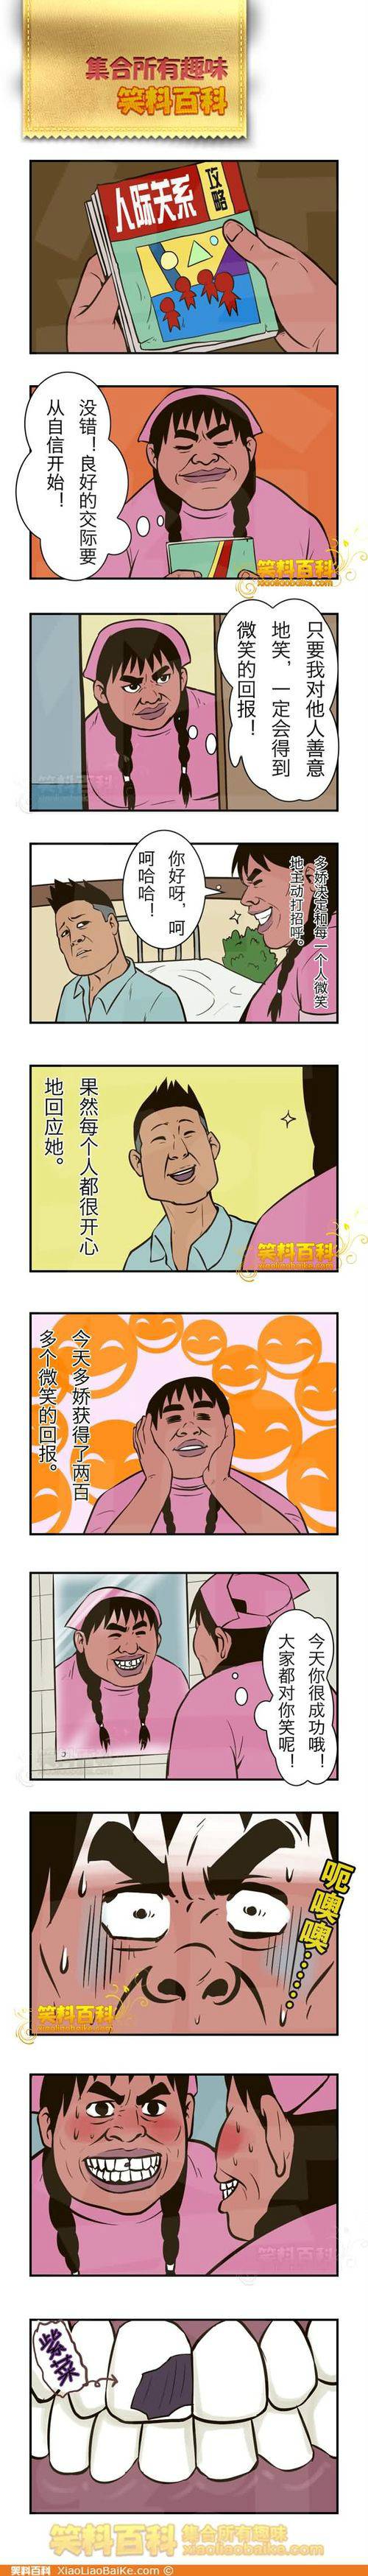 邪恶漫画爆笑囧图第284刊：多谢师姐